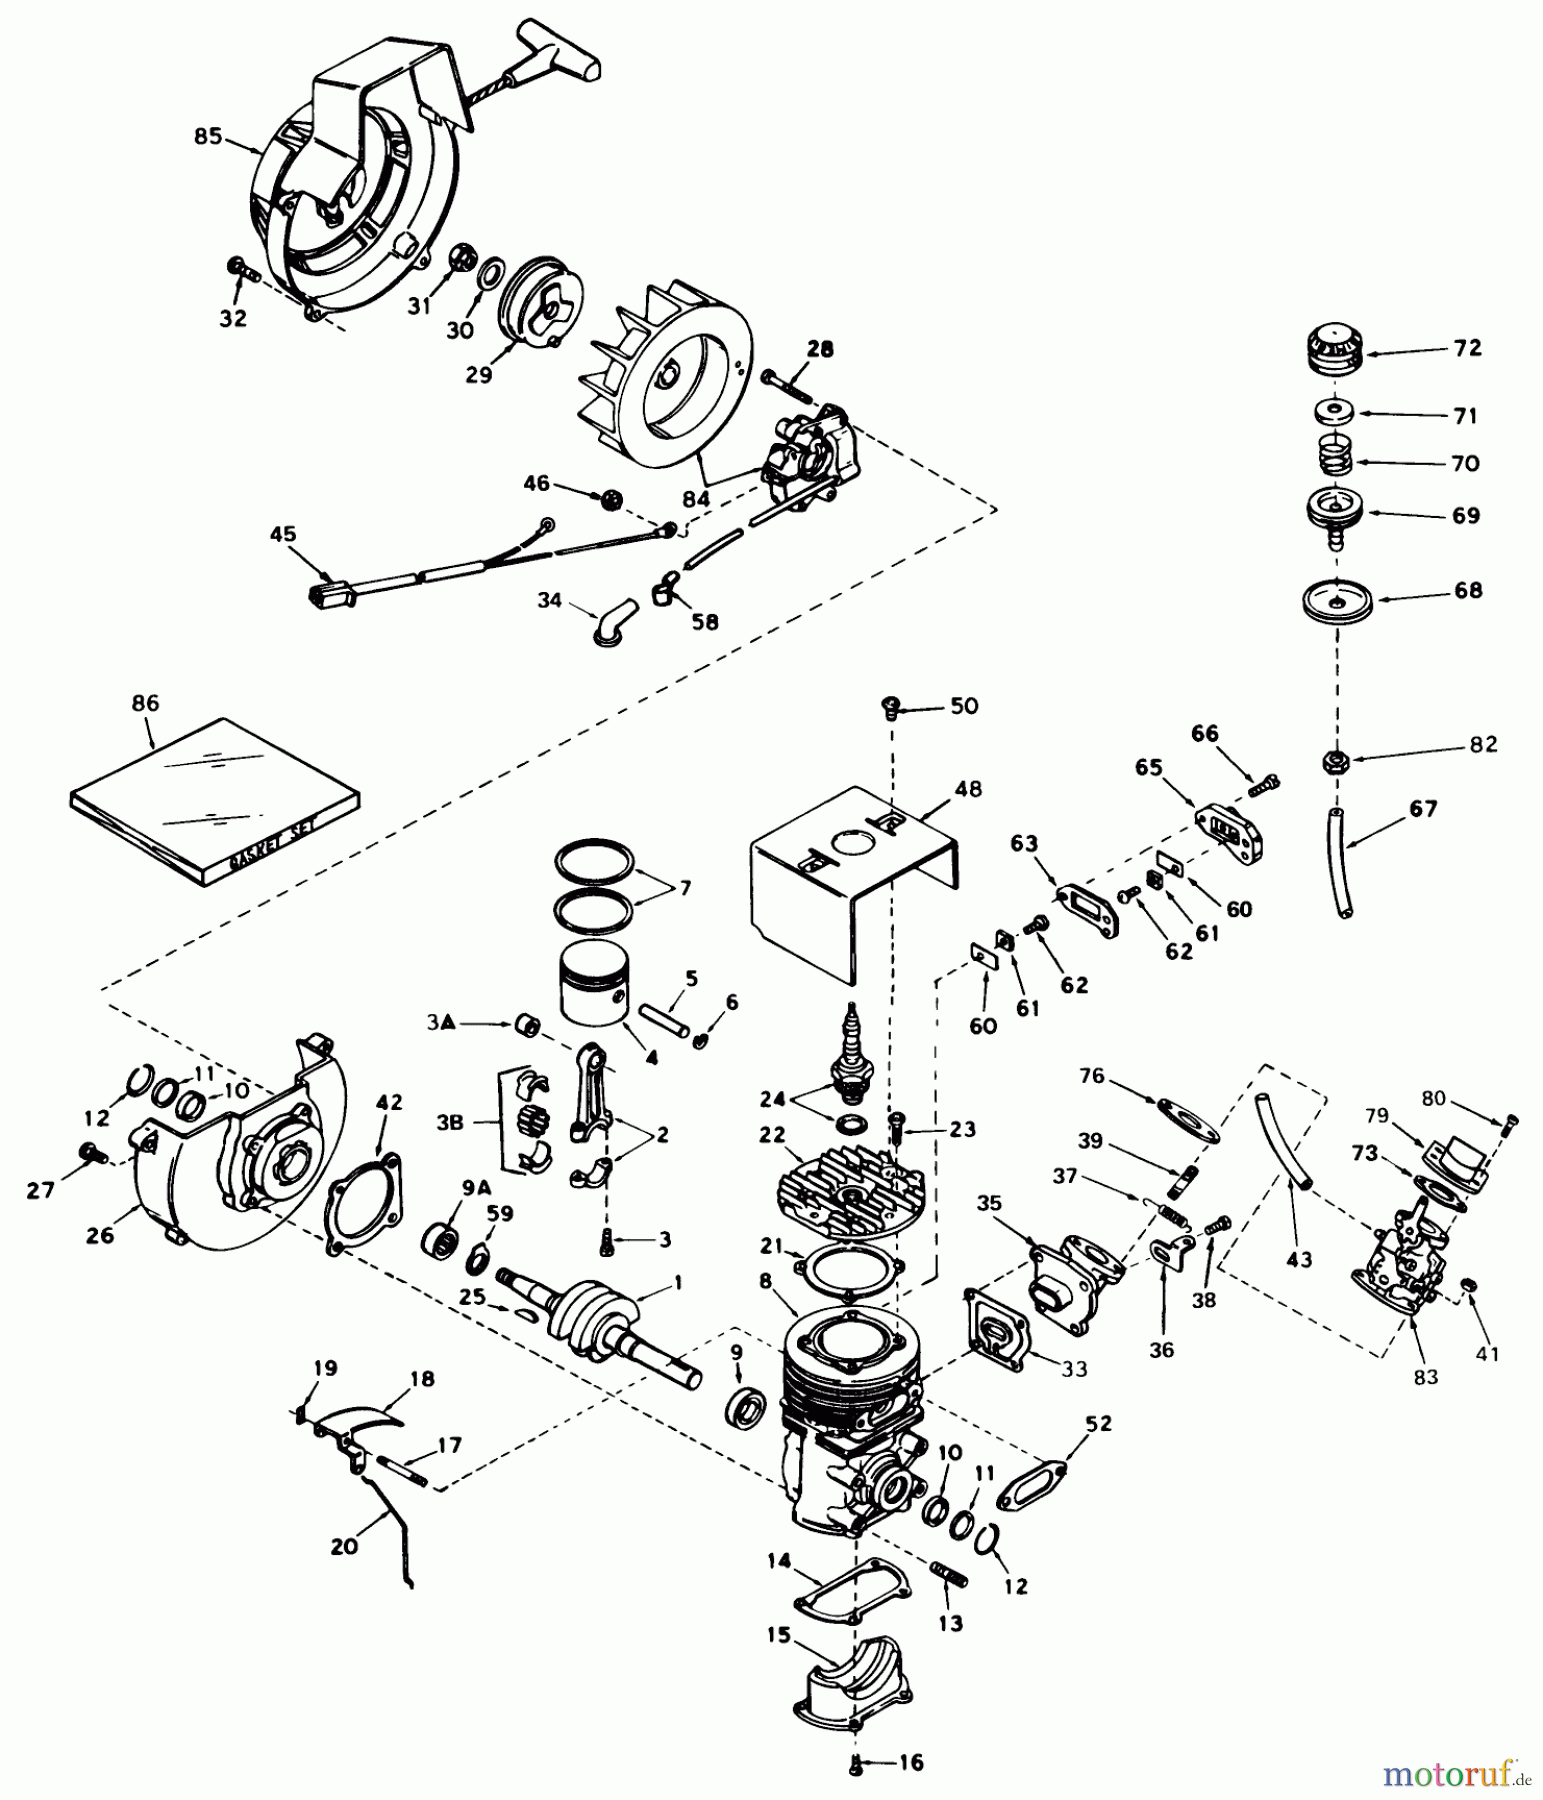  Toro Neu Snow Blowers/Snow Throwers Seite 1 31505 - Toro Snowmaster, 1975 (5000001-5999999) ENGINE ASSEMBLY ENGINE, TECUMSEH MODEL NO. AH 520 TYPE 1574